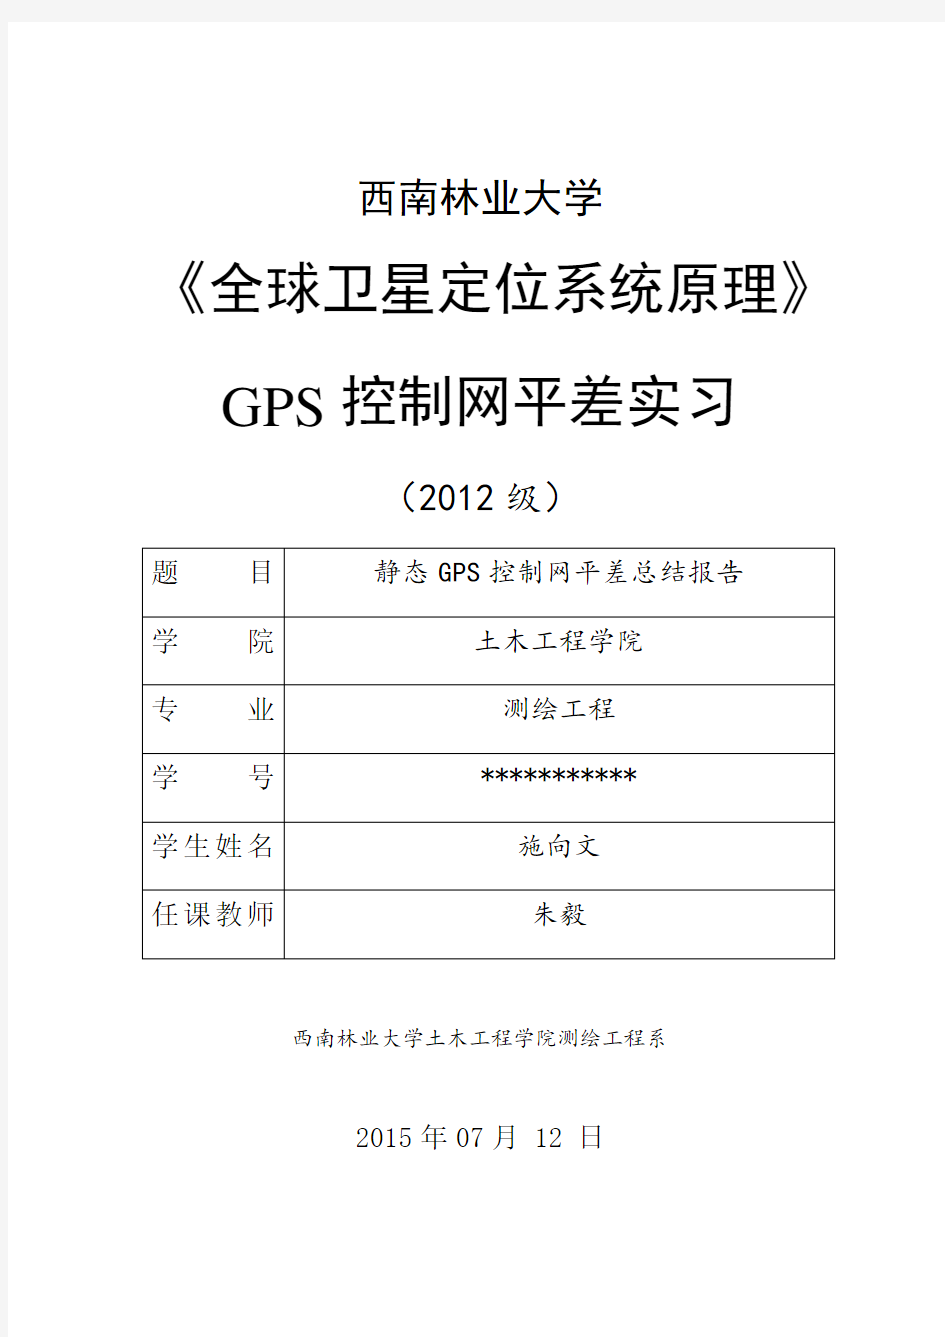 GPS控制网平差总结报告.